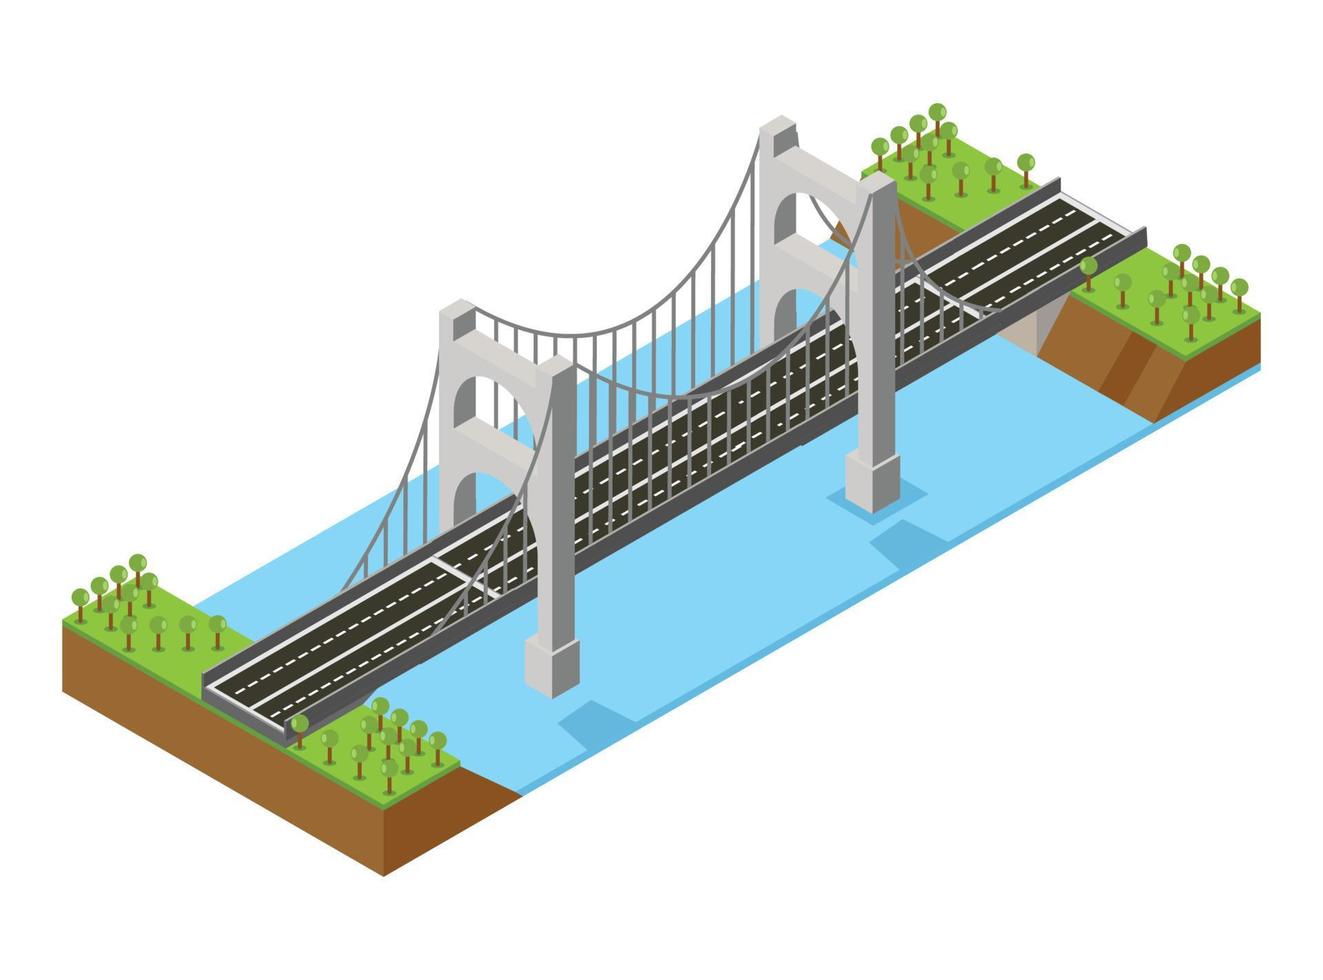 ponte isométrica conectando 2 cidades. ilustração vetorial isométrica adequada para diagramas, infográficos e outros ativos gráficos vetor